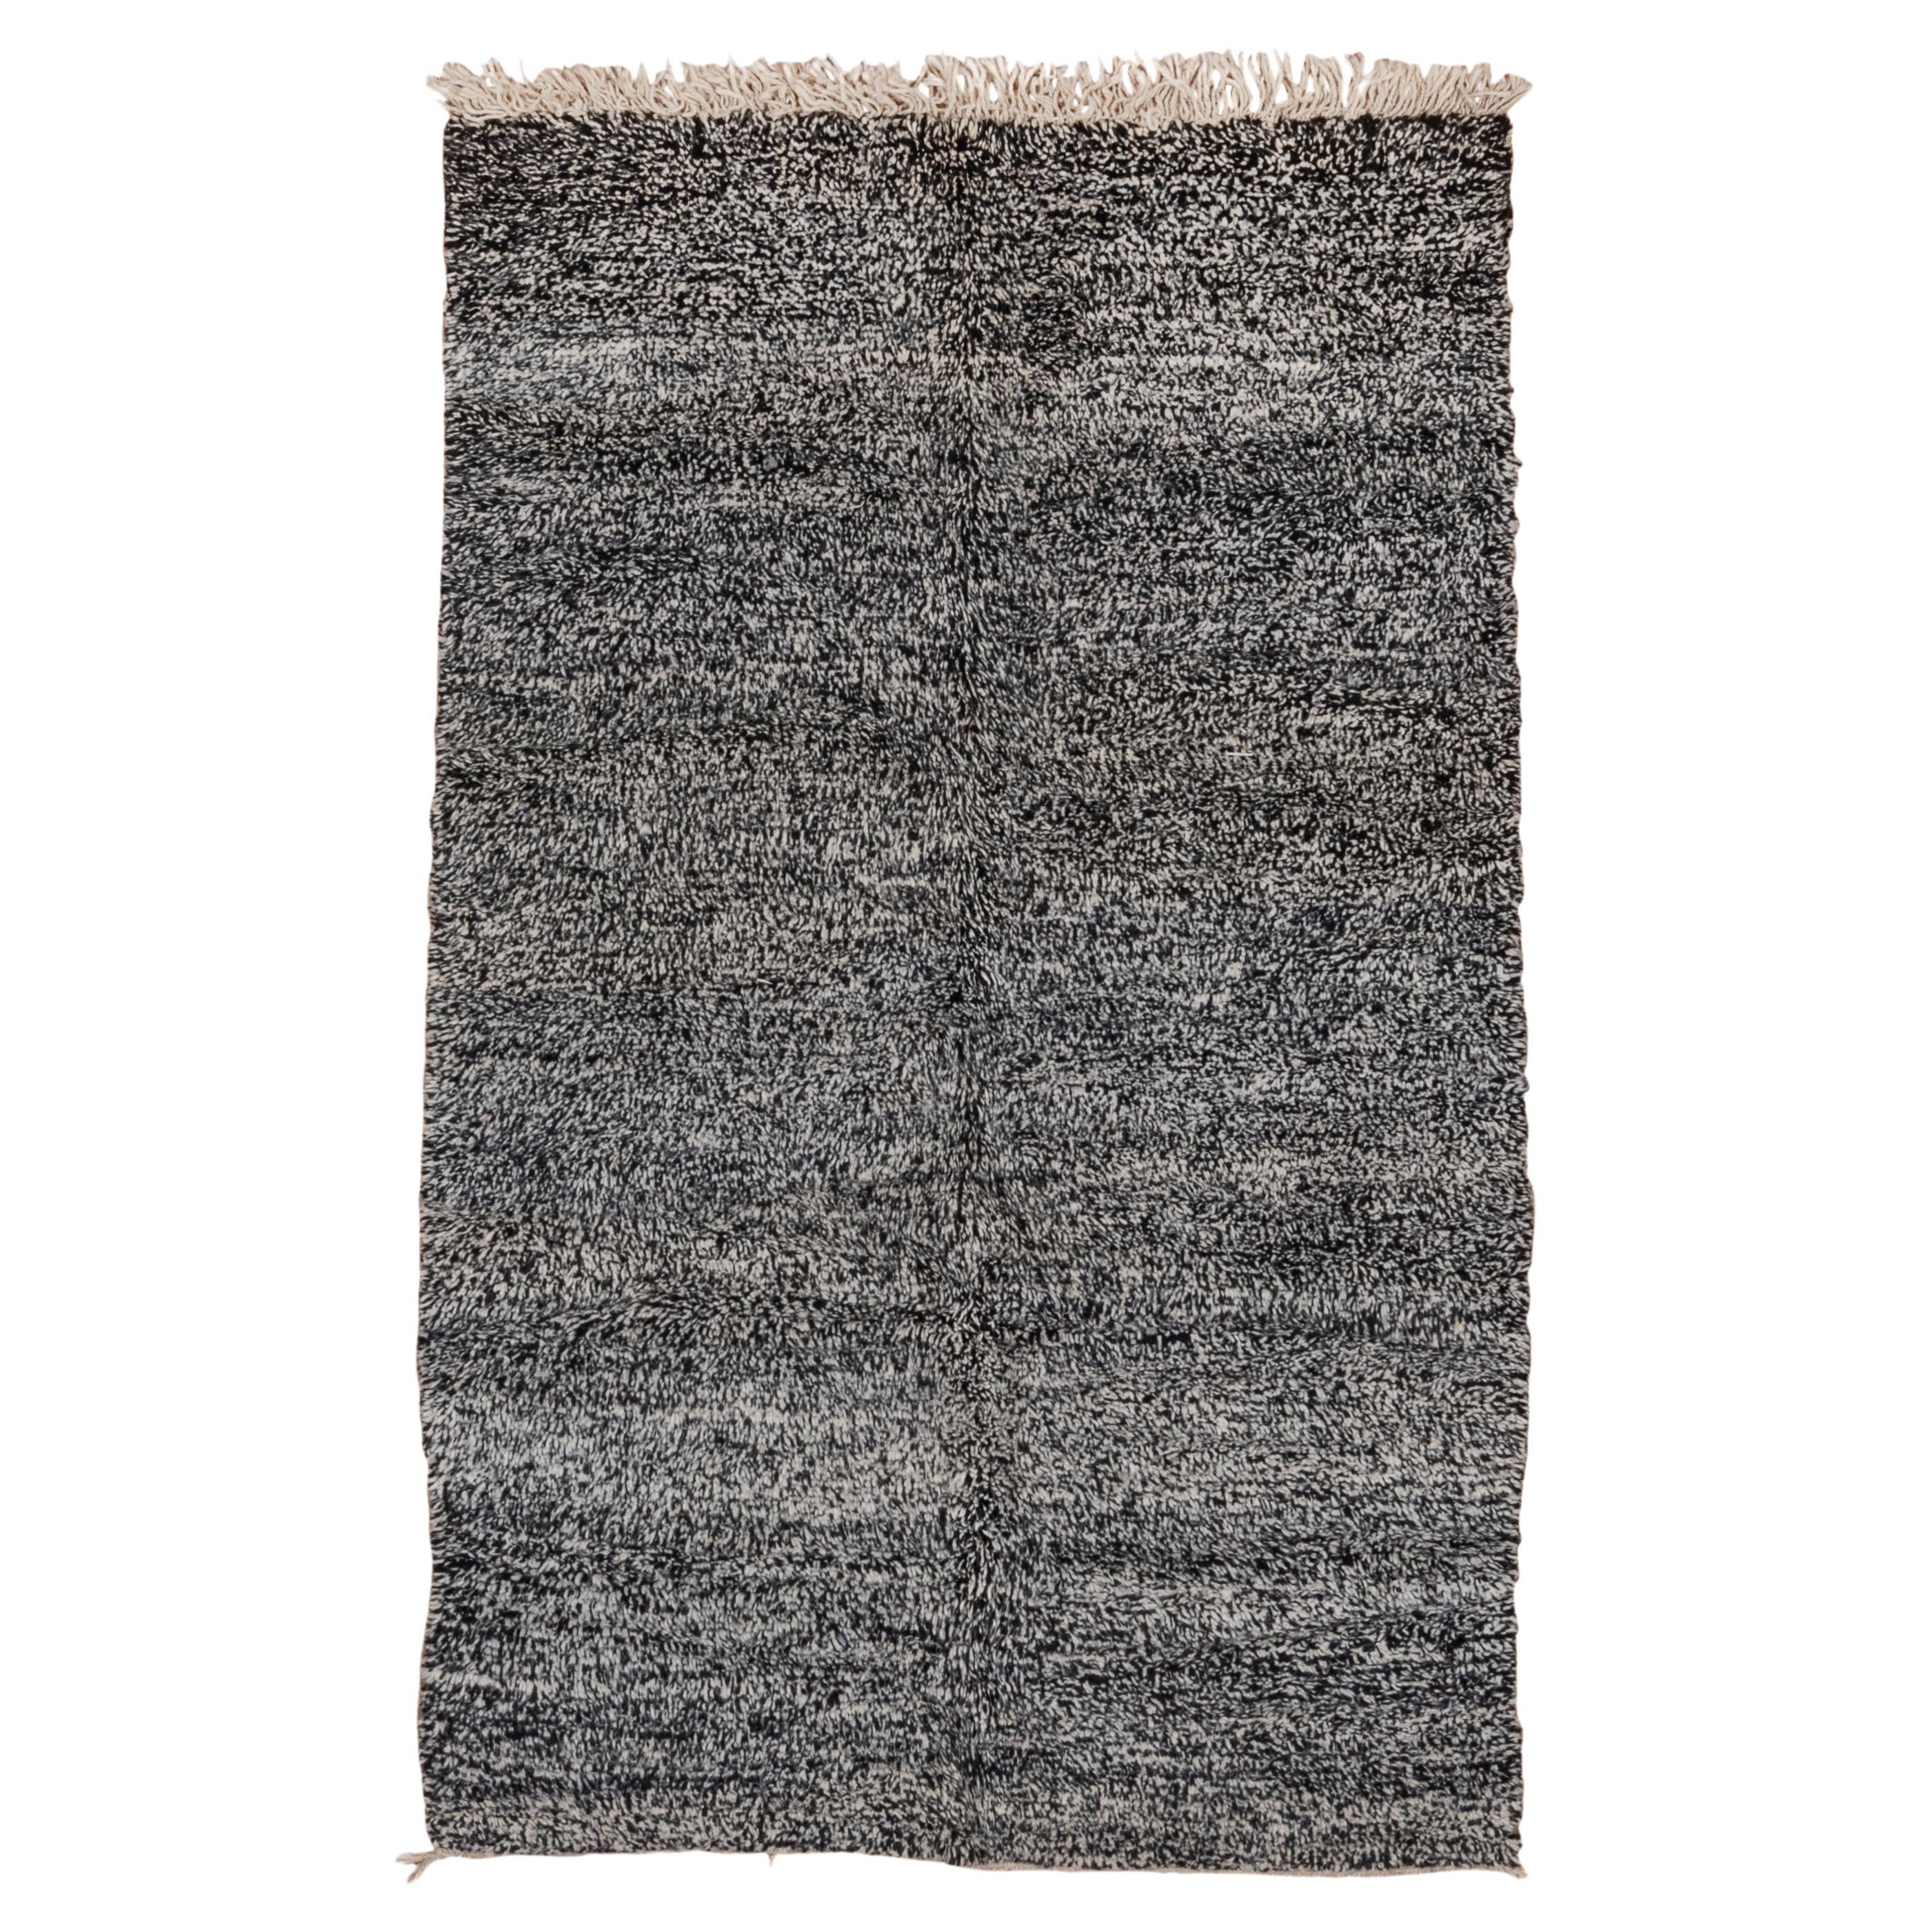 Moroccan village carpet solid grey